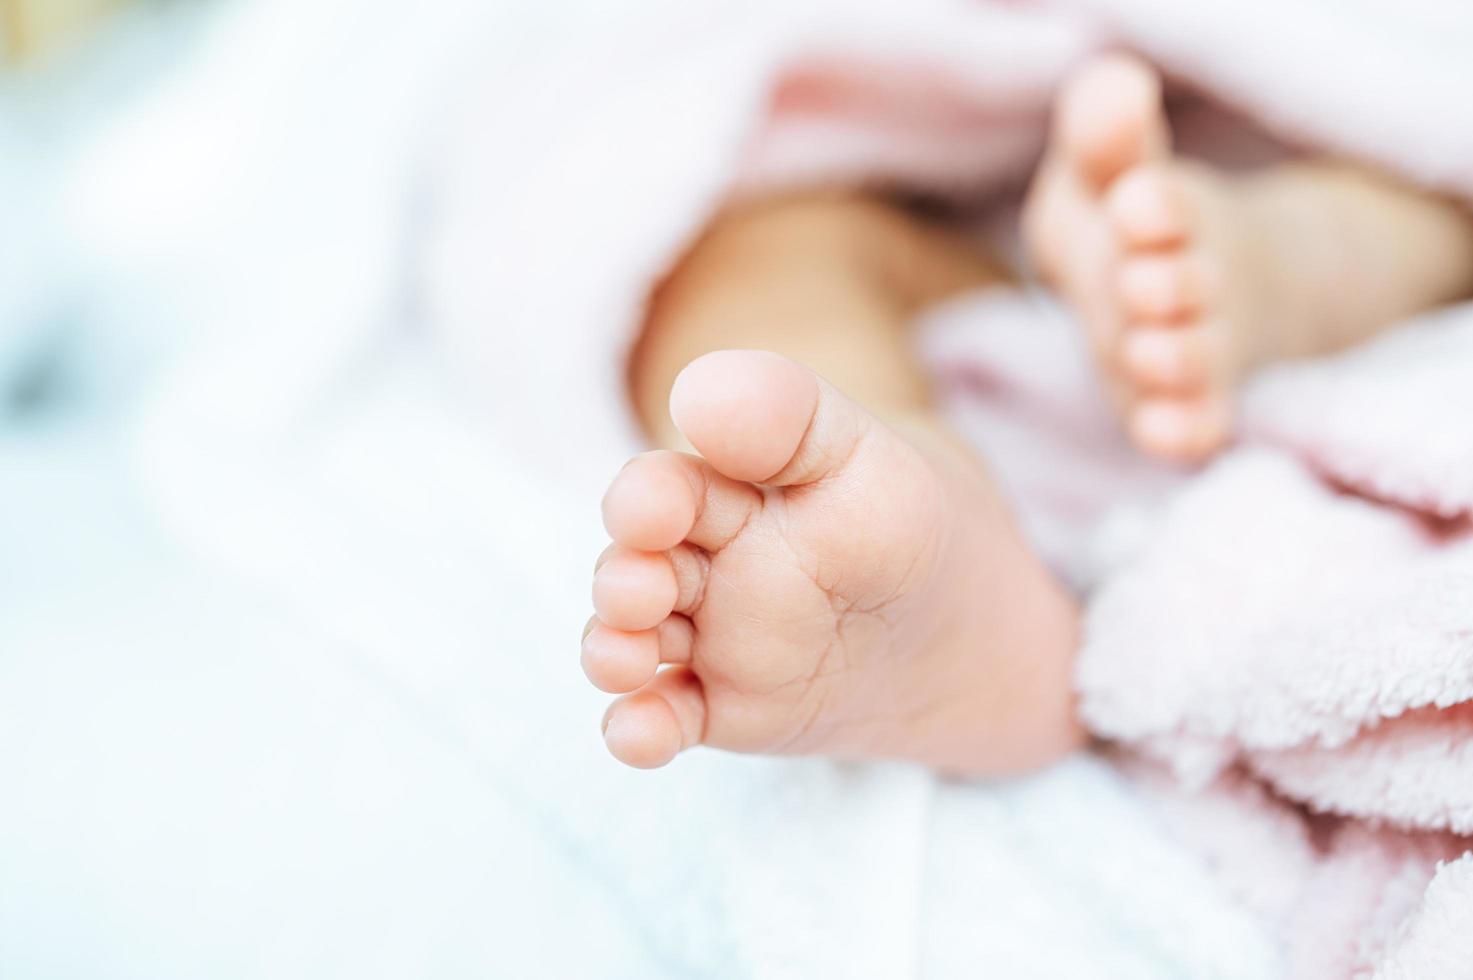 Newborn baby feet photo